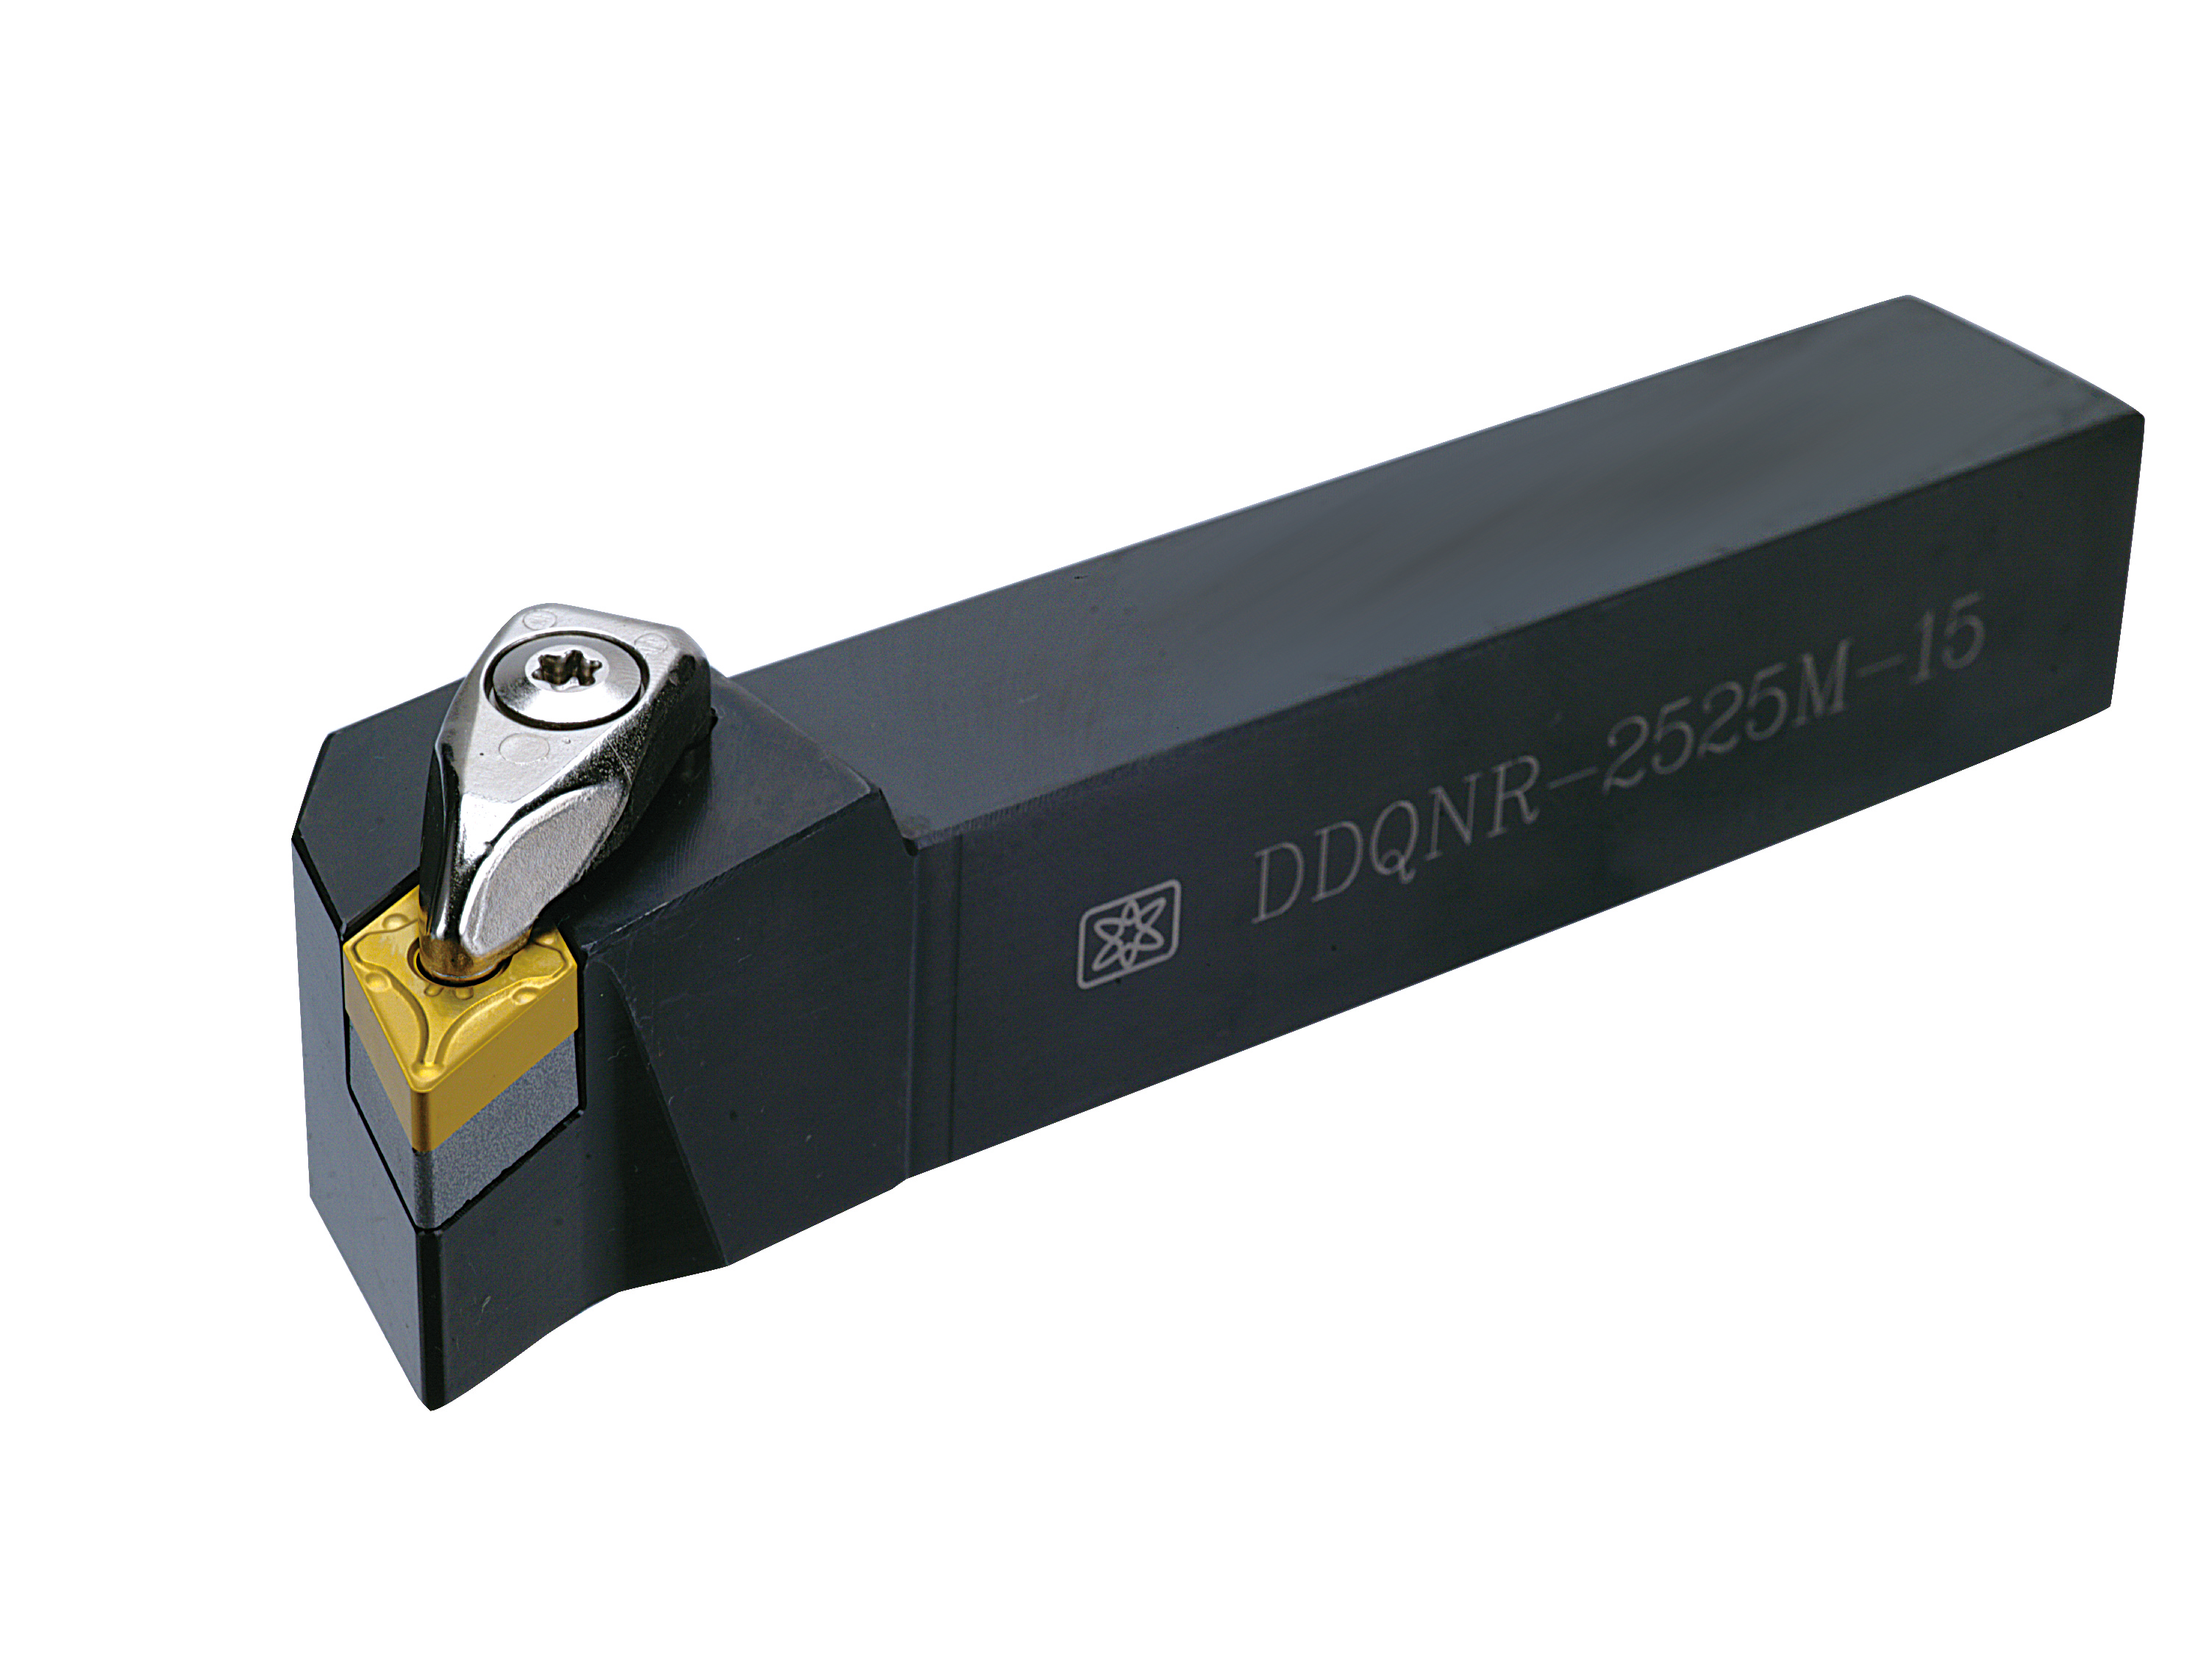 Catalog|DDQNR (DNMG1504 / DNMG1506) External Turning Tool Holder